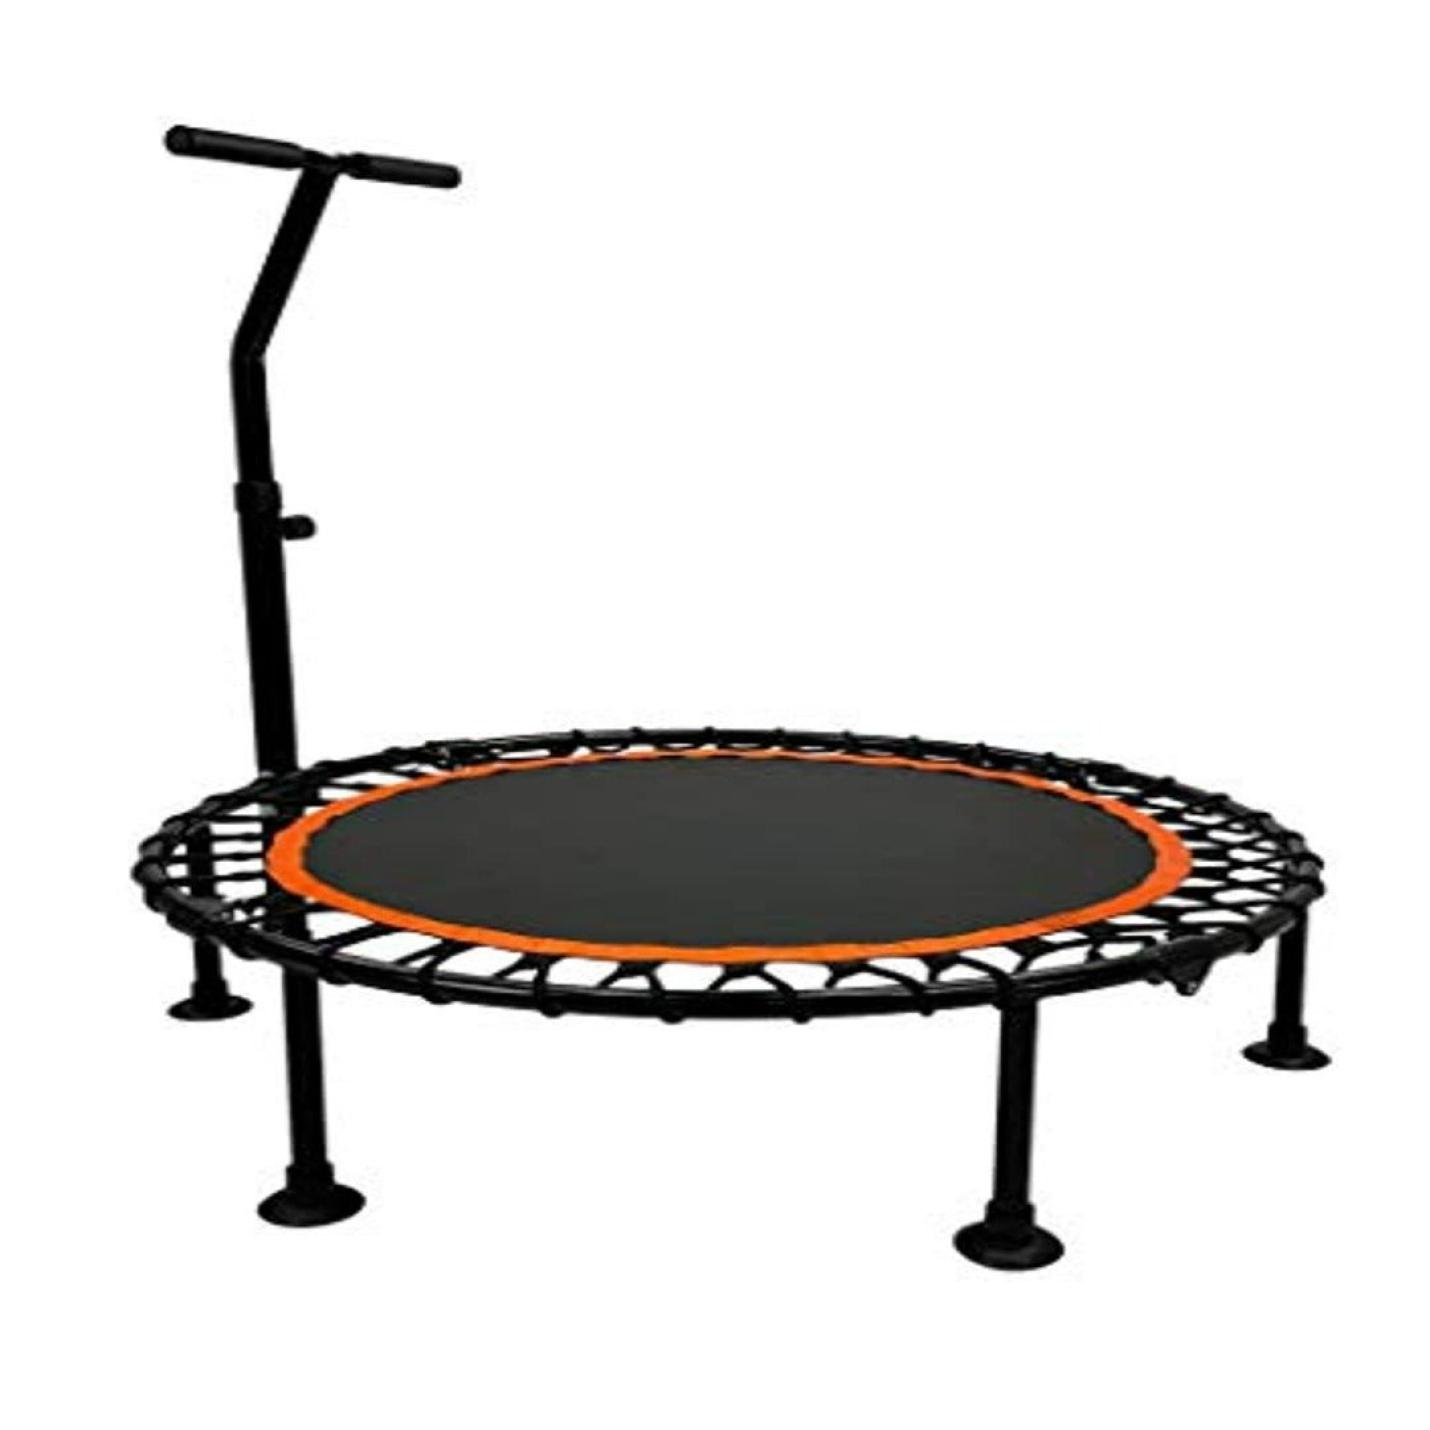 Compacte trampoline voor krachtige workouts en plezier